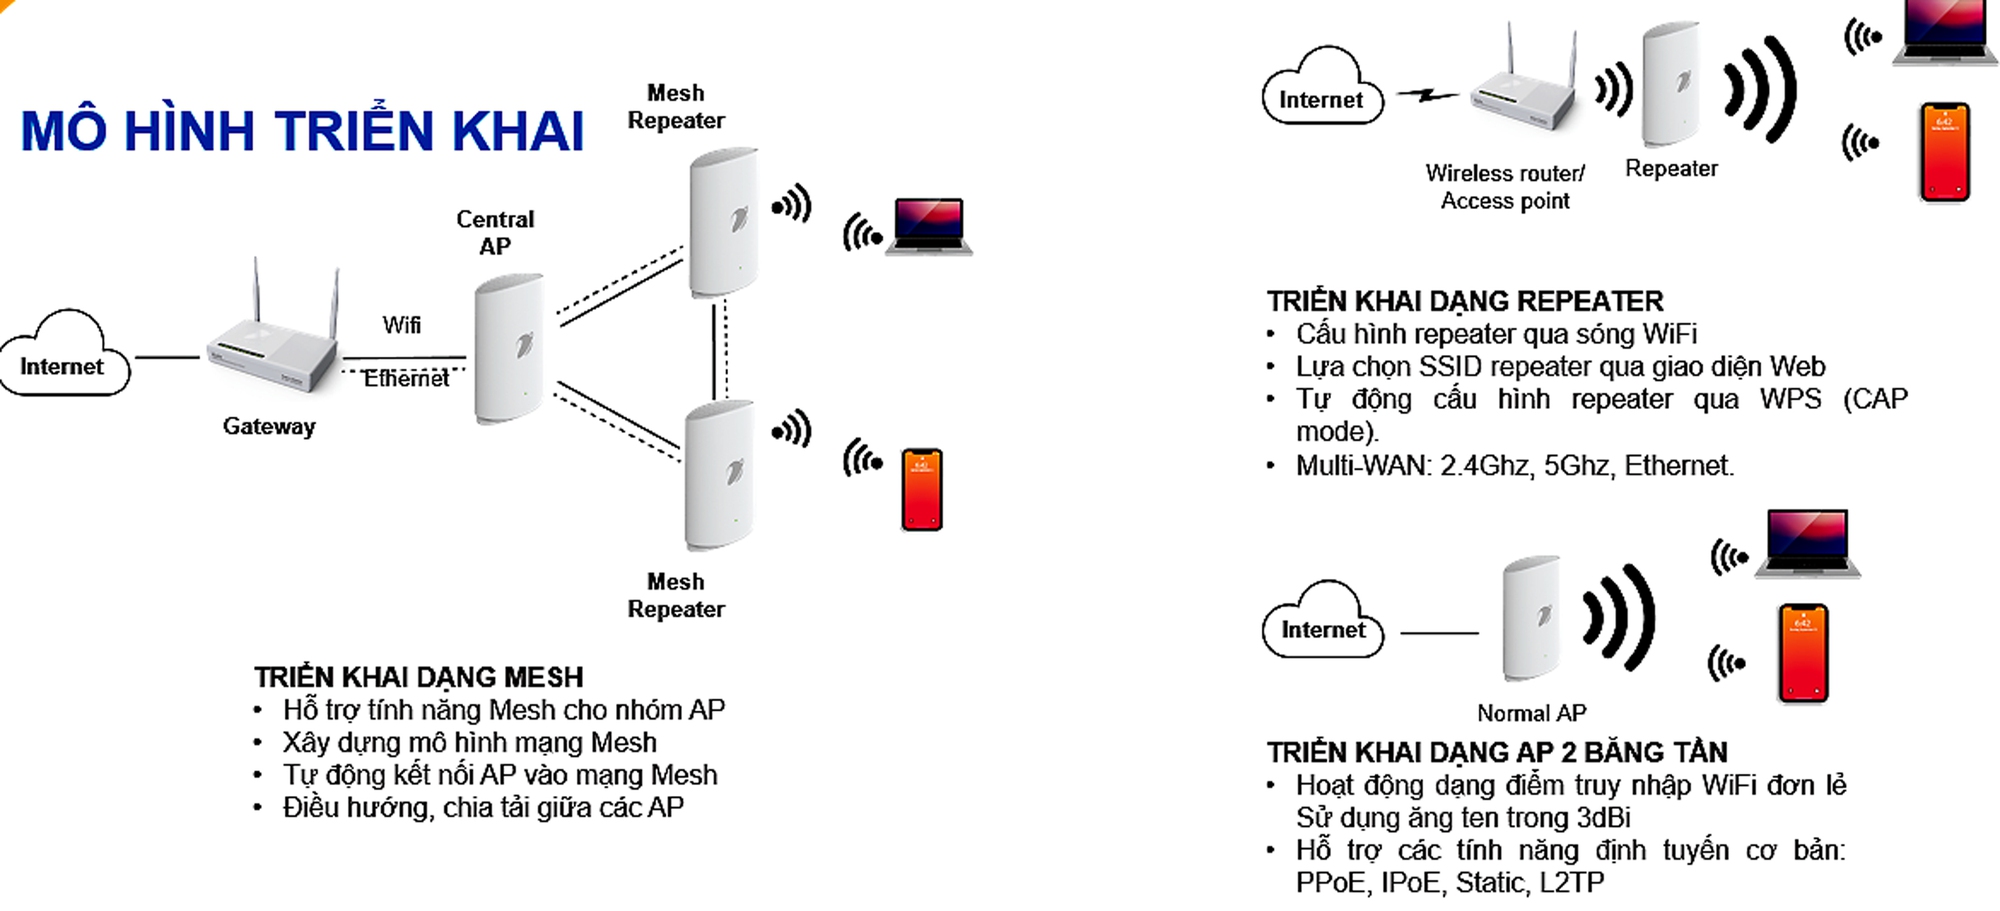 Thiết lập hệ thống WiFi Mesh cho nhà 3 tầng  Các mô hình hệ thống mạng  thông dụng  Hướng dẫn sử dụng